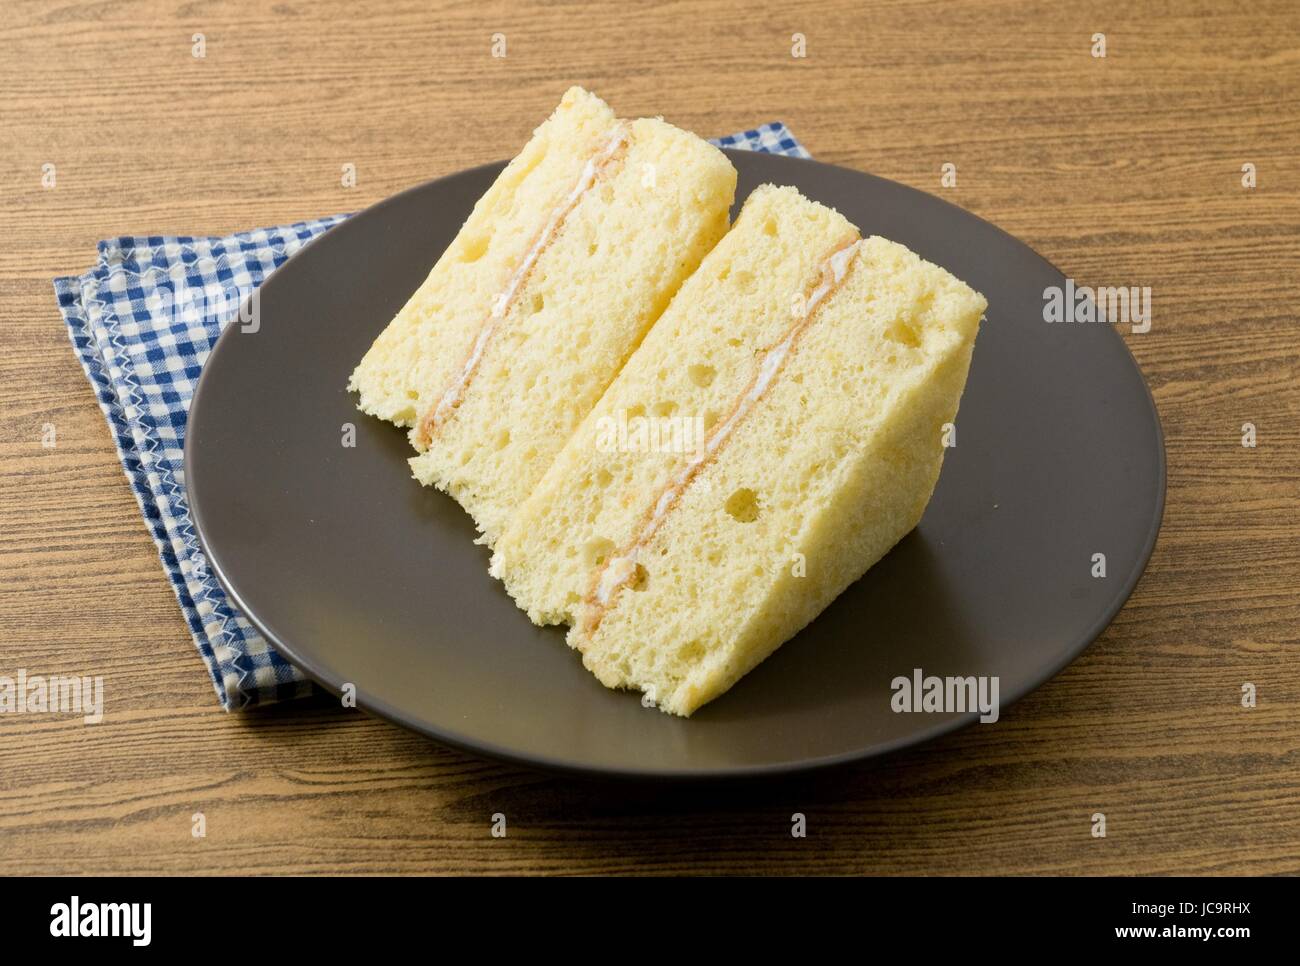 Snack e Dessert, Vaniglia Chiffon torta fatta con burro, uova, zucchero, farina, il lievito in polvere e aromi su un piatto nero. Foto Stock